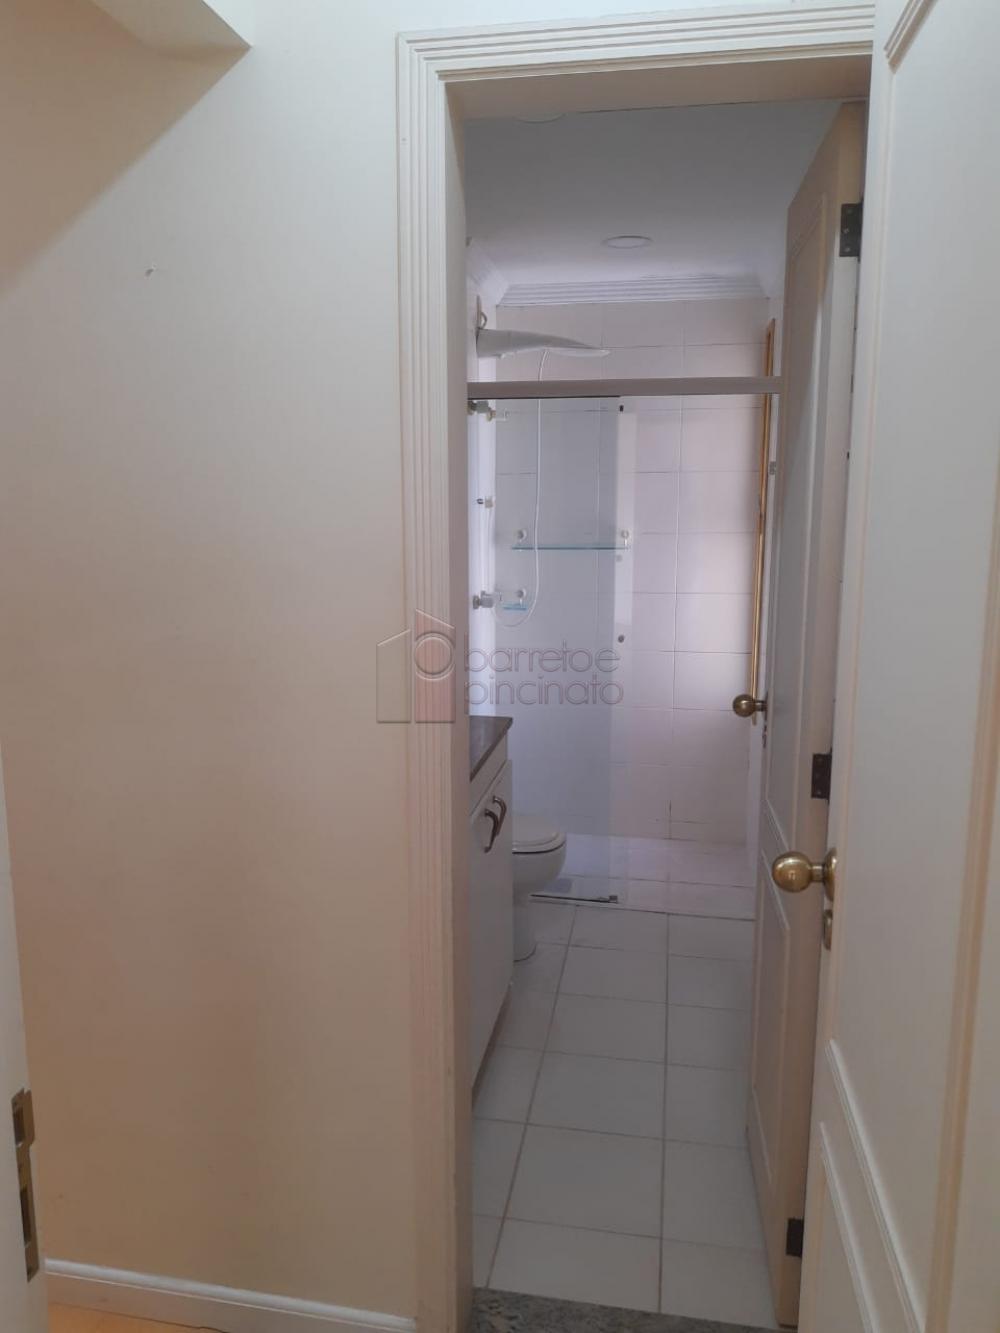 Alugar Apartamento / Padrão em Jundiaí R$ 1.900,00 - Foto 2